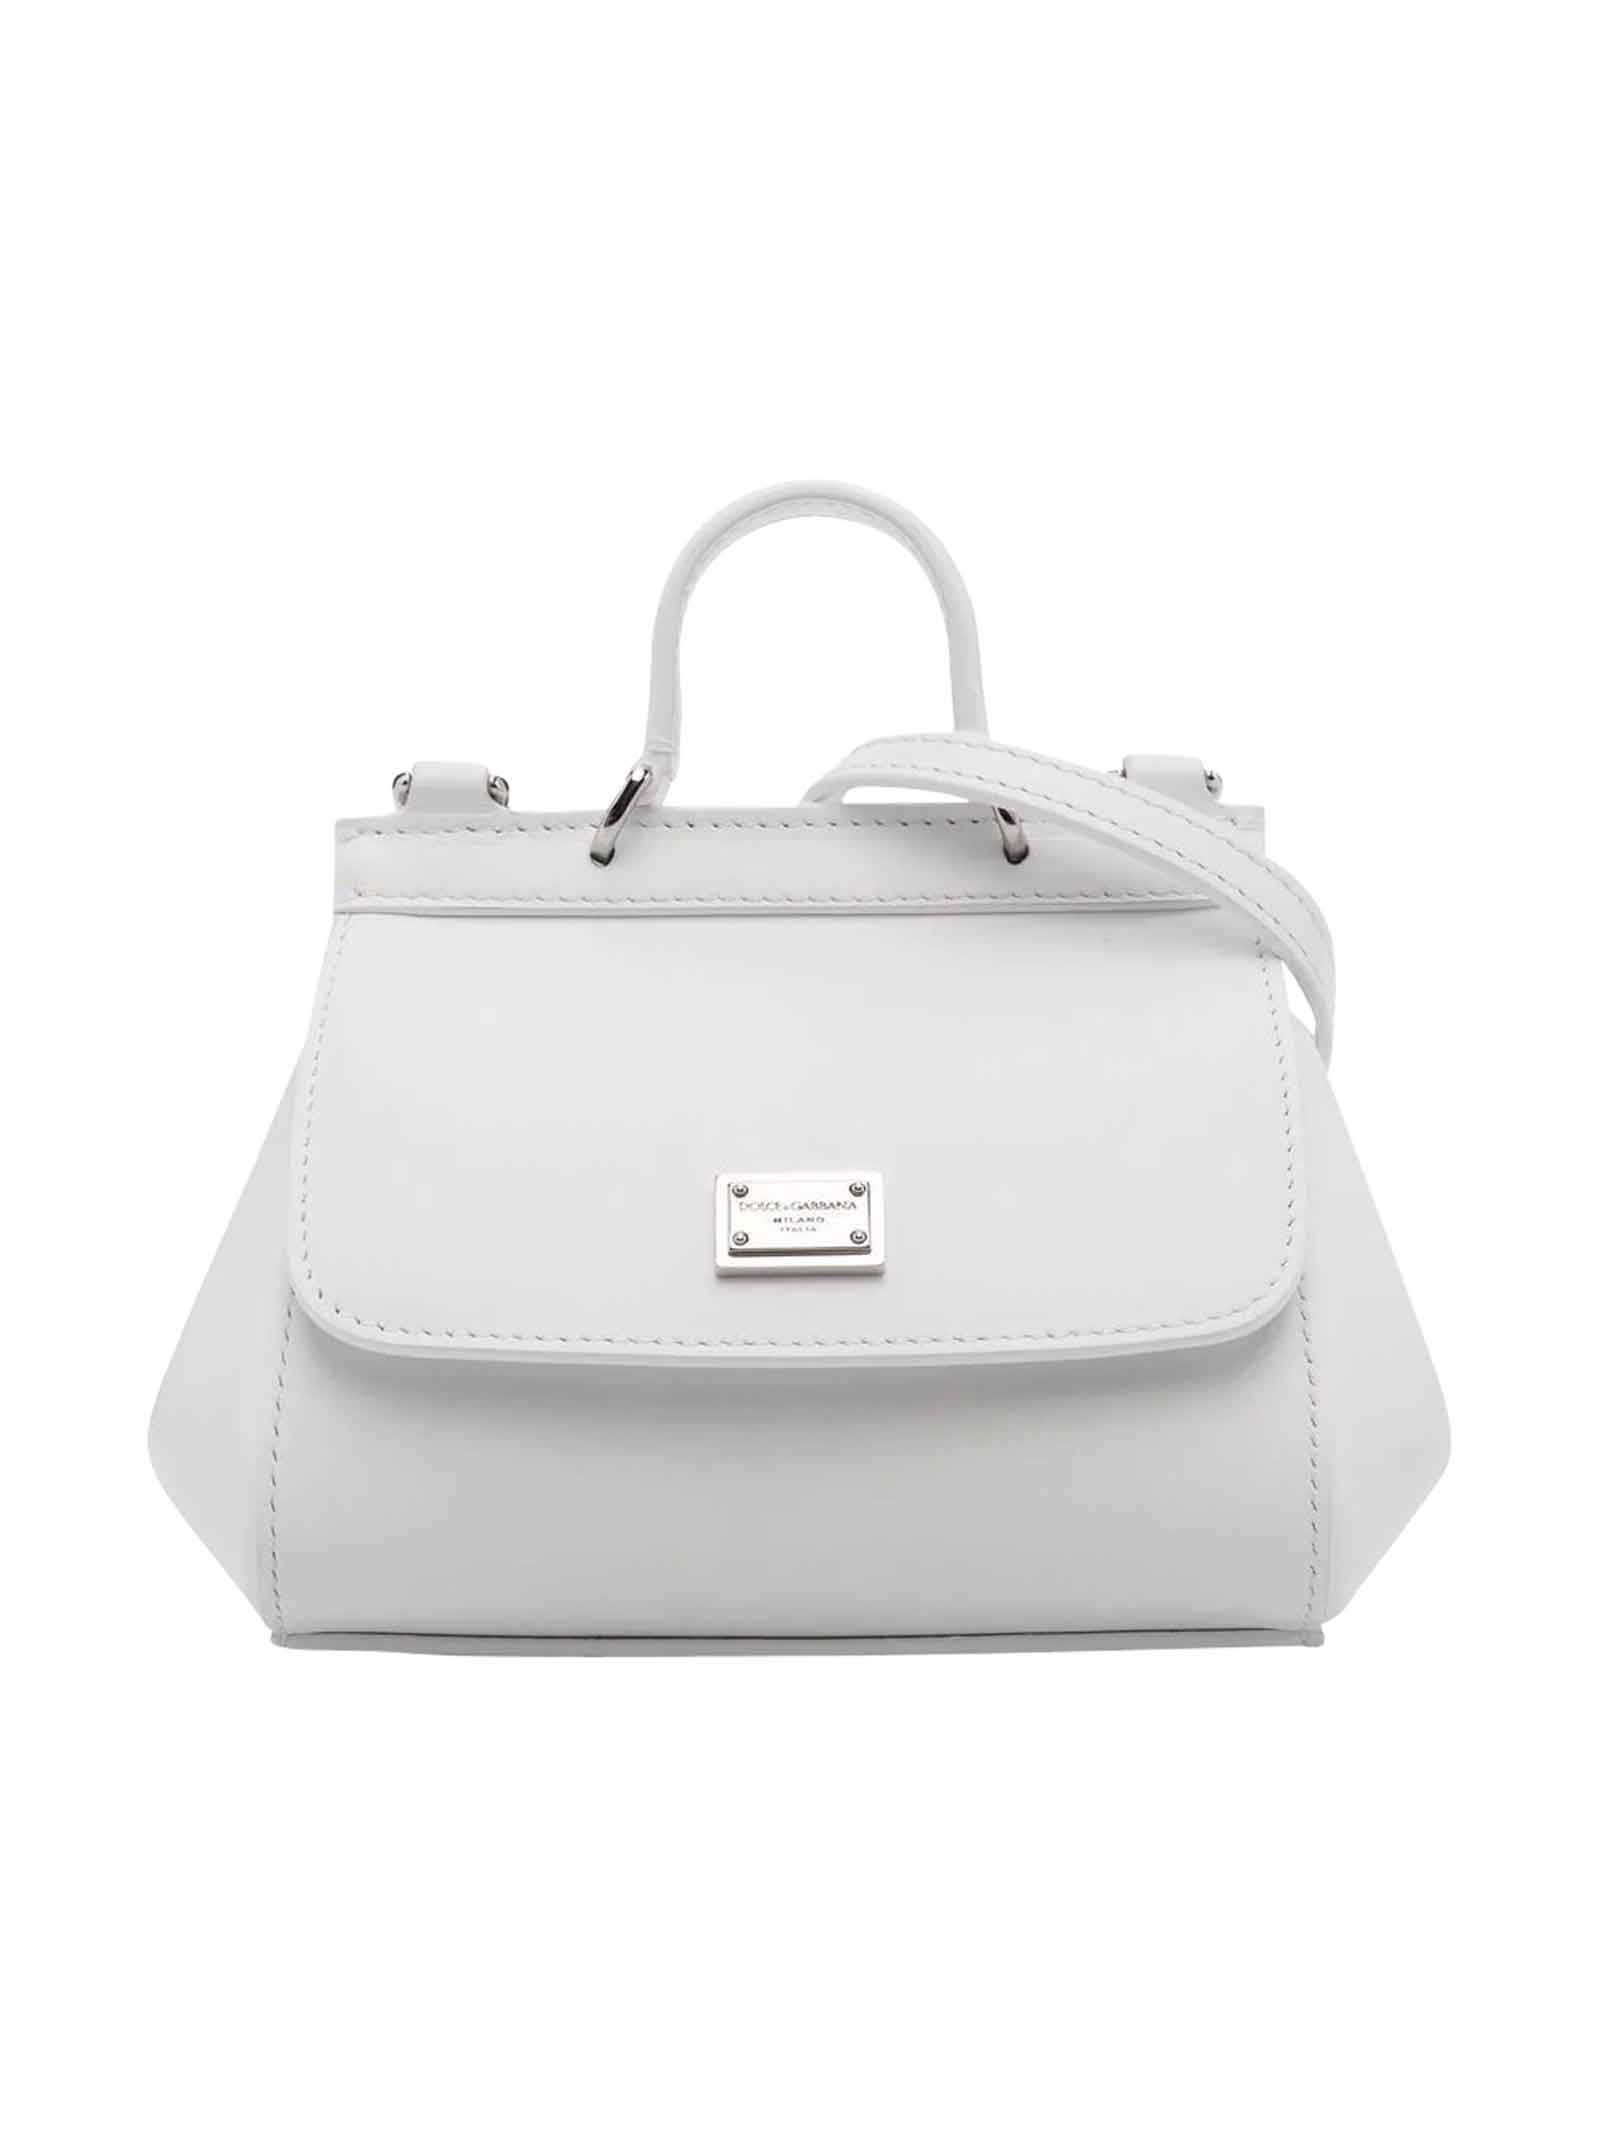 Dolce & Gabbana White Bag Girl